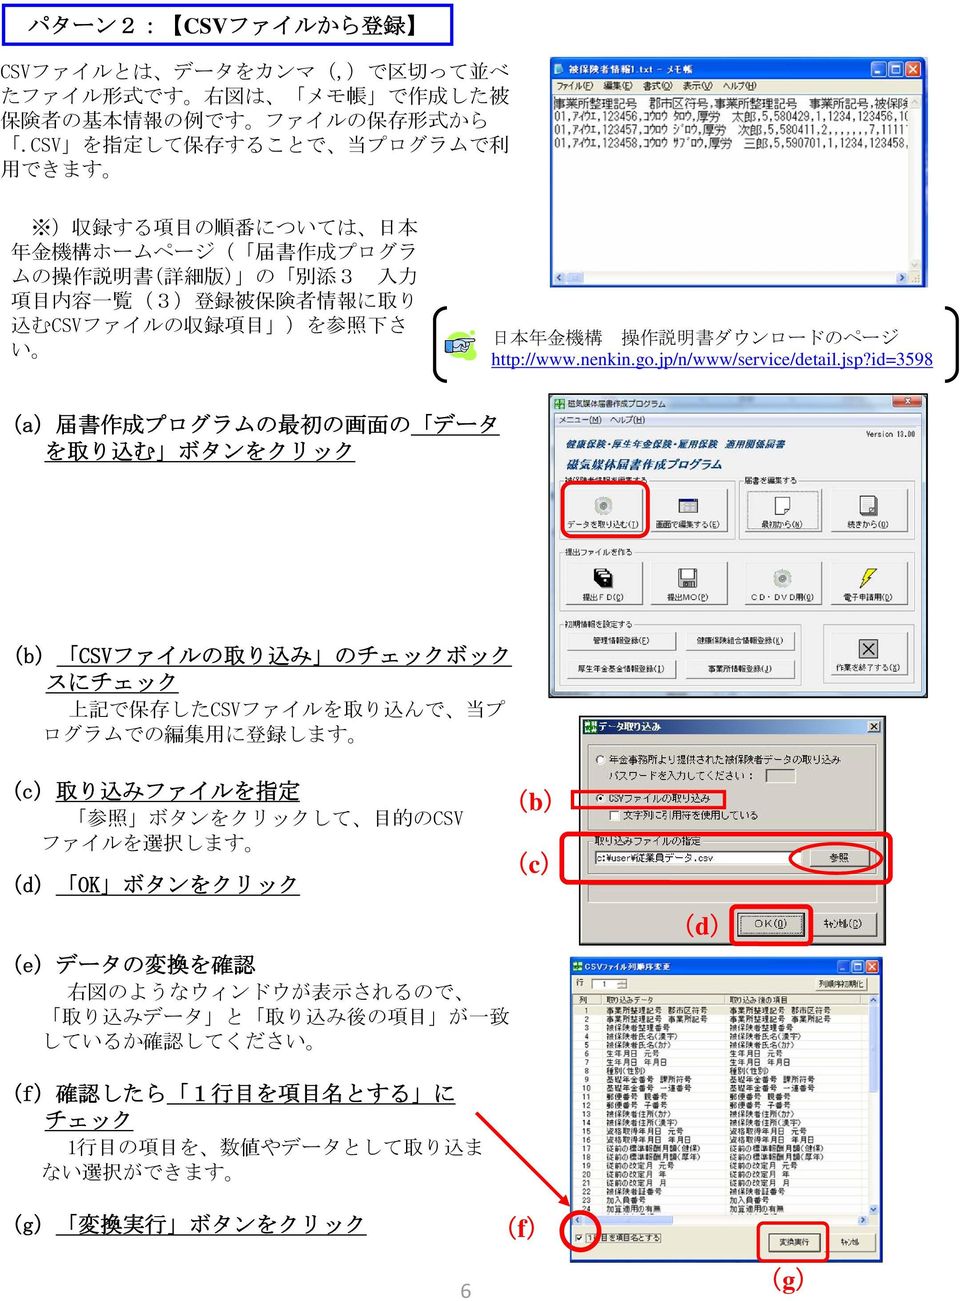 下 さ い 日 本 年 金 機 構 操 作 説 明 書 ダウンロードのページ http://www.nenkin.go.jp/n/www/service/detail.jsp?